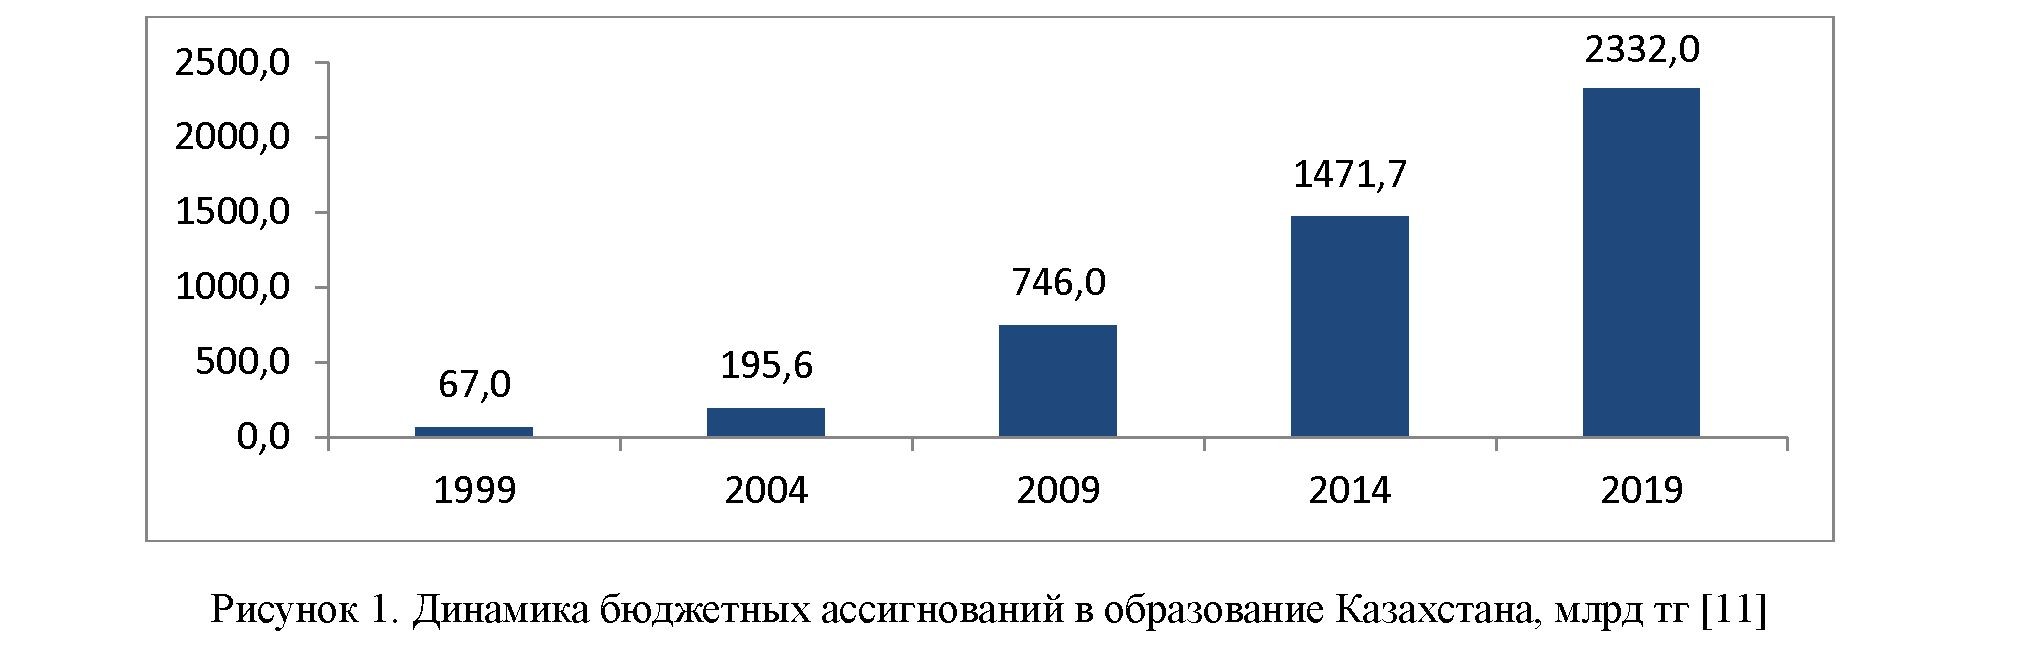 Анализ состояния системы высшего образования в Казахстане